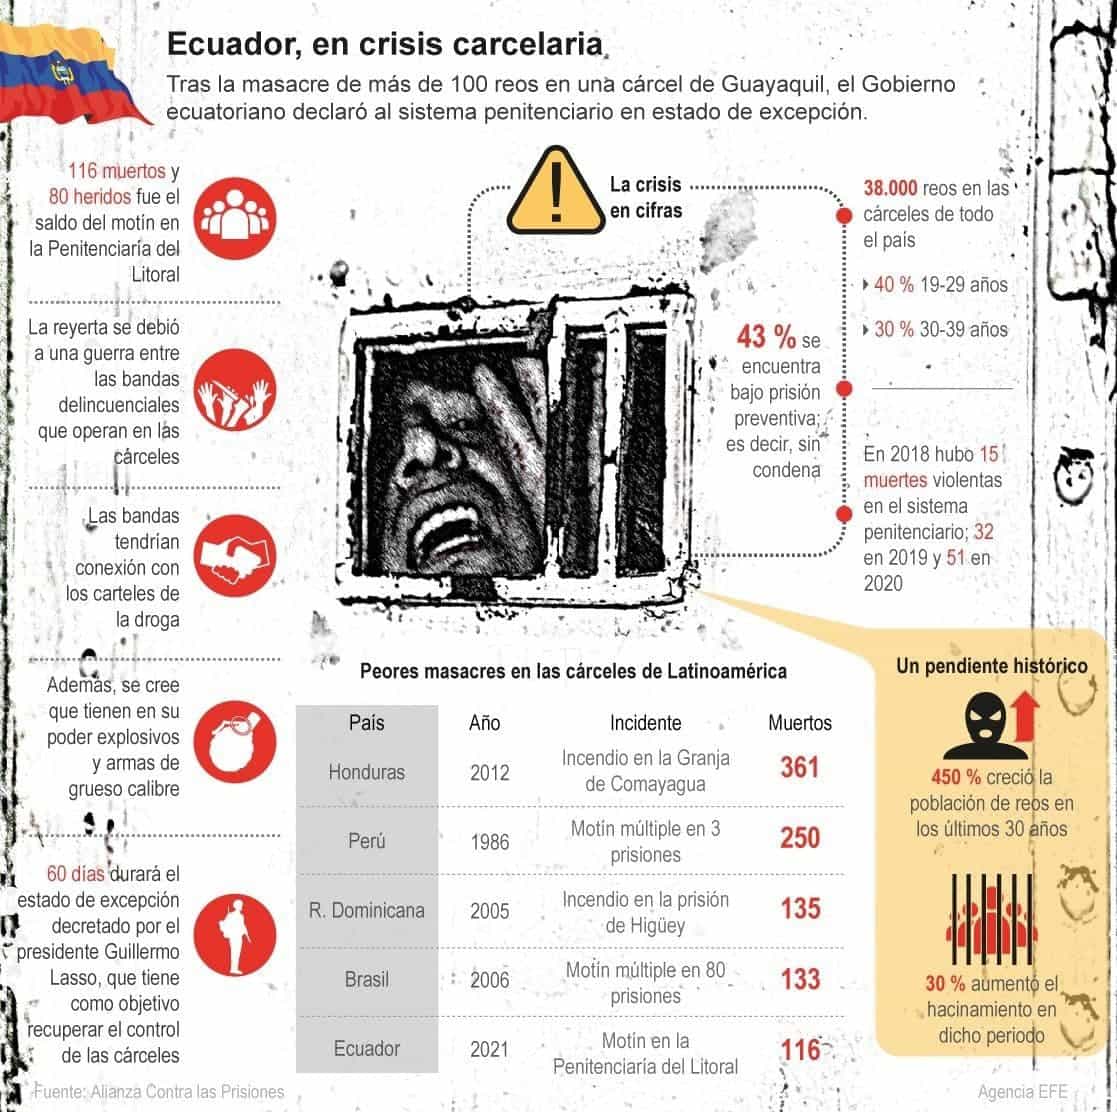 [Infografía] Ecuador, en crisis carcelaria 1